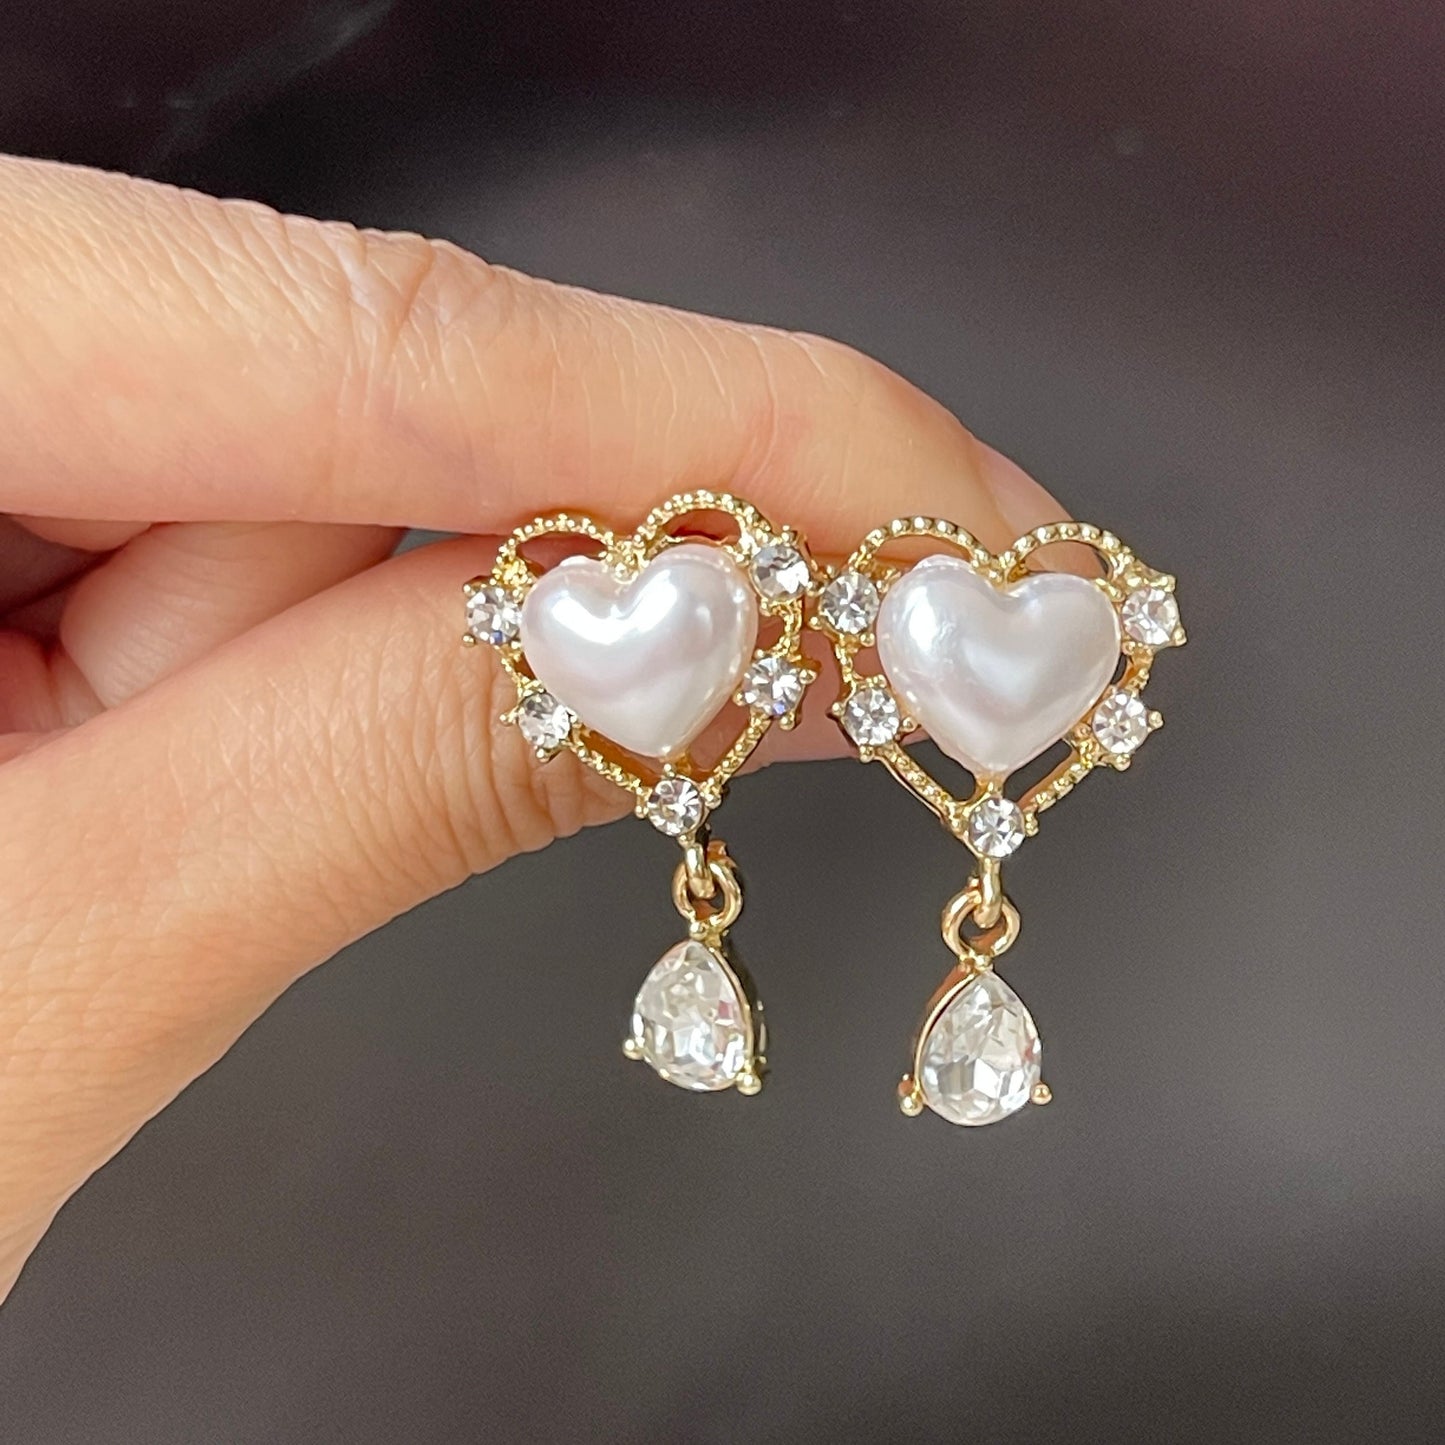 Romantic heart earrings, Pearl statement earrings, Gold lace earrings, Teardrop dangle, Gift for her, Princess earrings, Heart earrings, Y2K